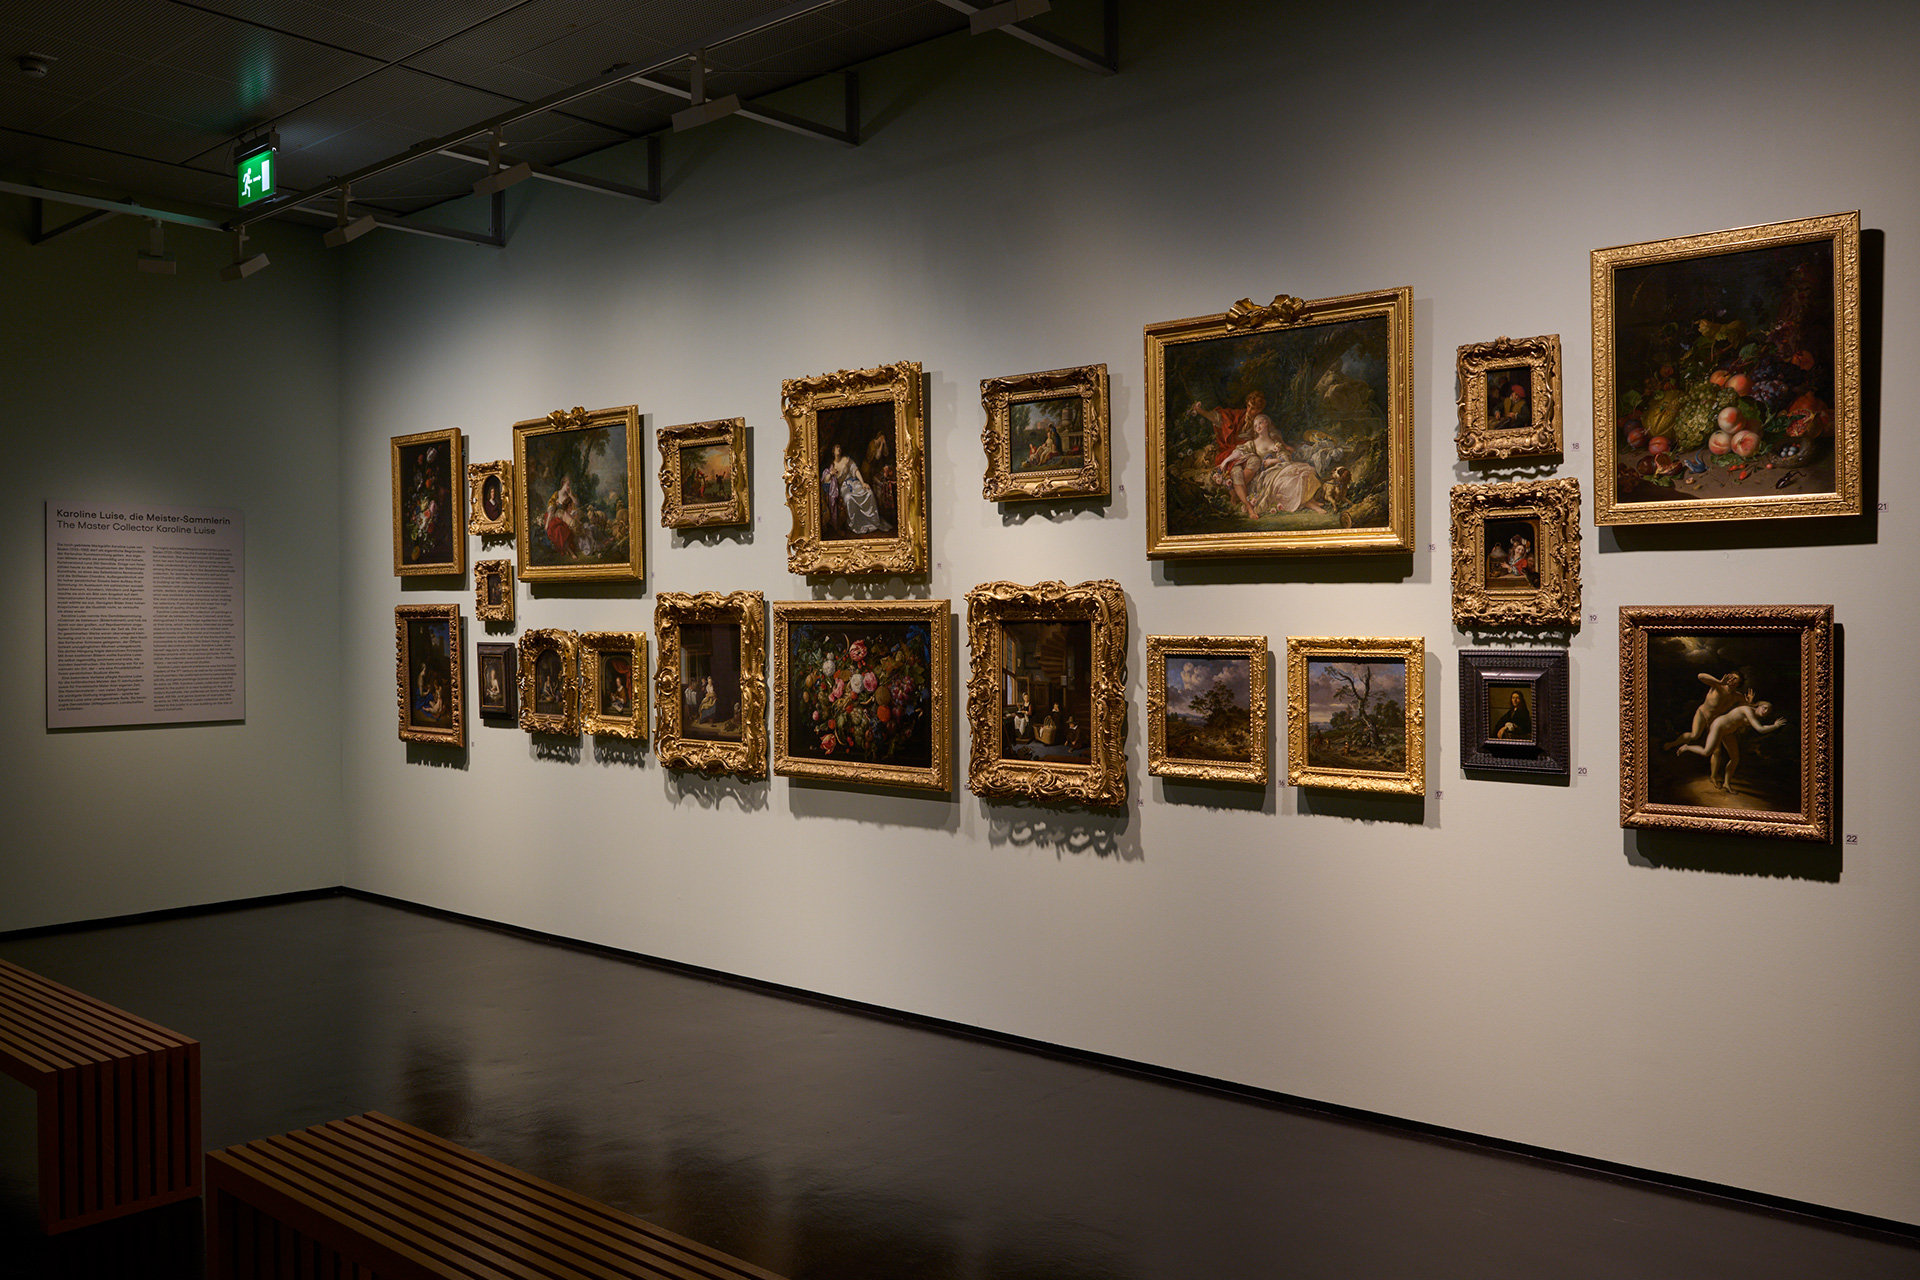 Ausstellungsansicht mit barocker Hängung in der Kunsthalle Karlsruhe. An der Wand hängen verschiedene Gemälde in goldenen Rahmen.